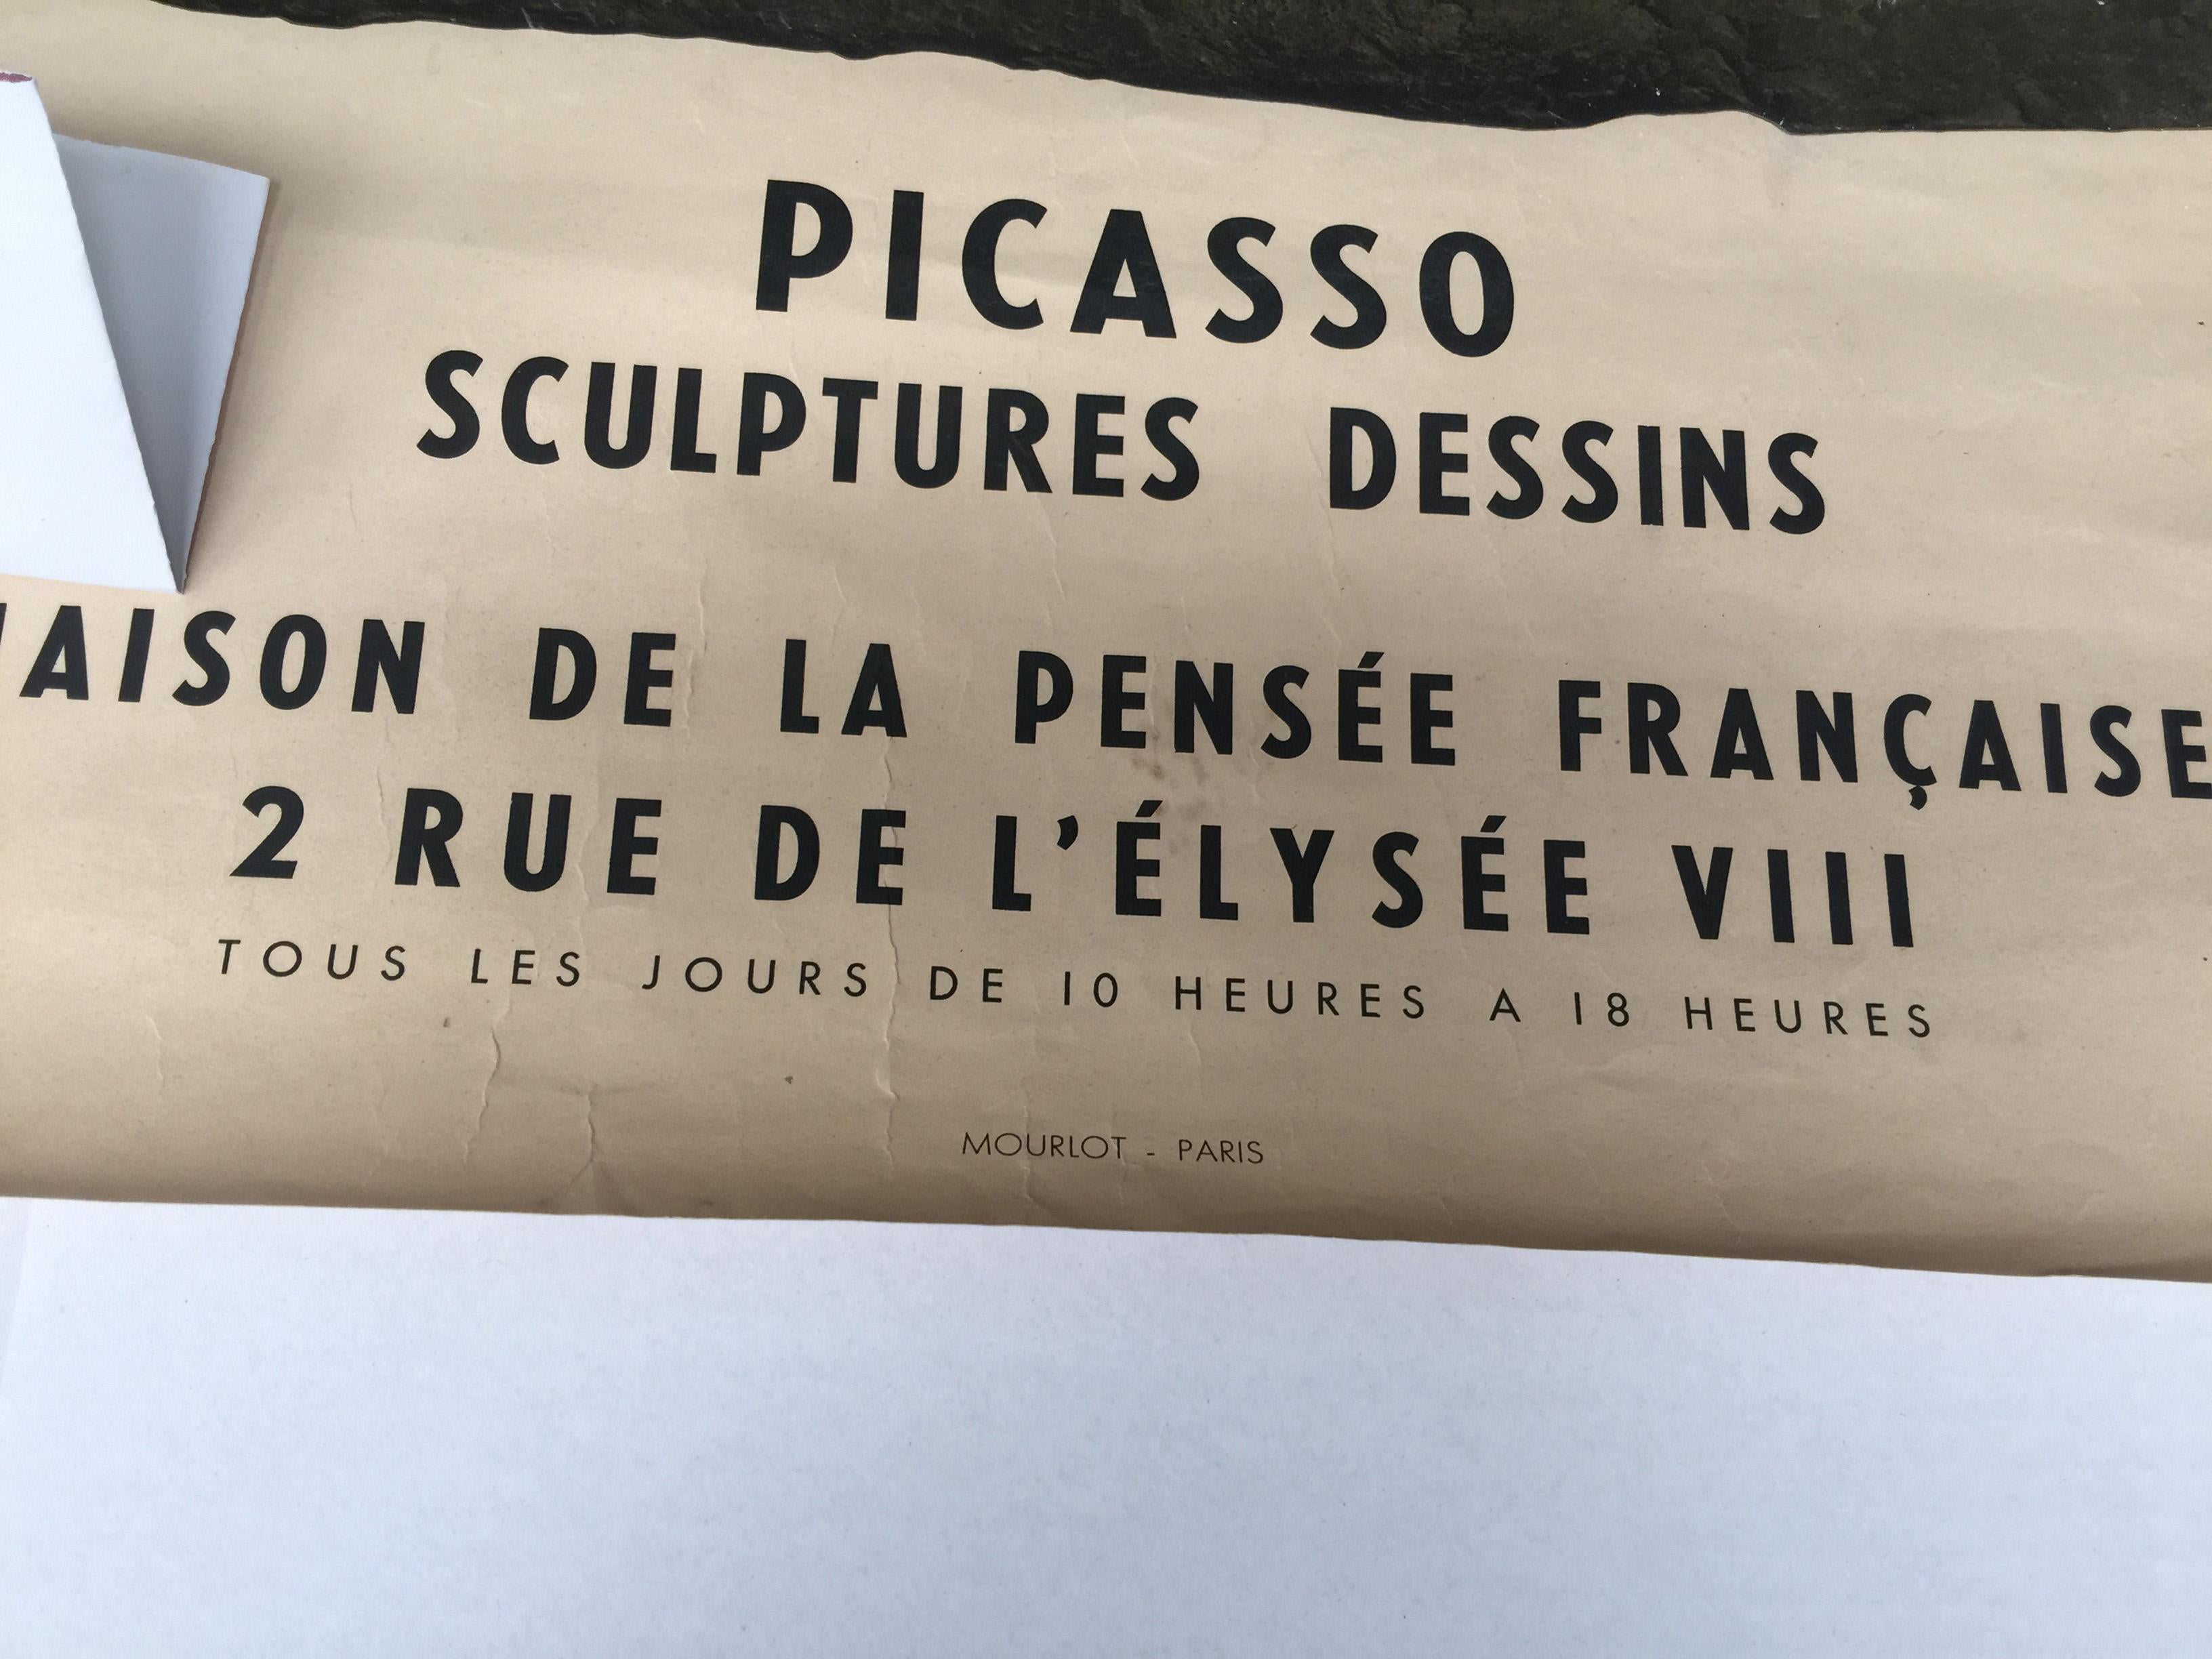 Vintage-Plakat von Pablo Picasso für die Ausstellung von Skulpturen und Zeichnungen im Maison de la Pensee Francaise, Paris, 1958.
Gedruckt bei Mourlot, Paris.